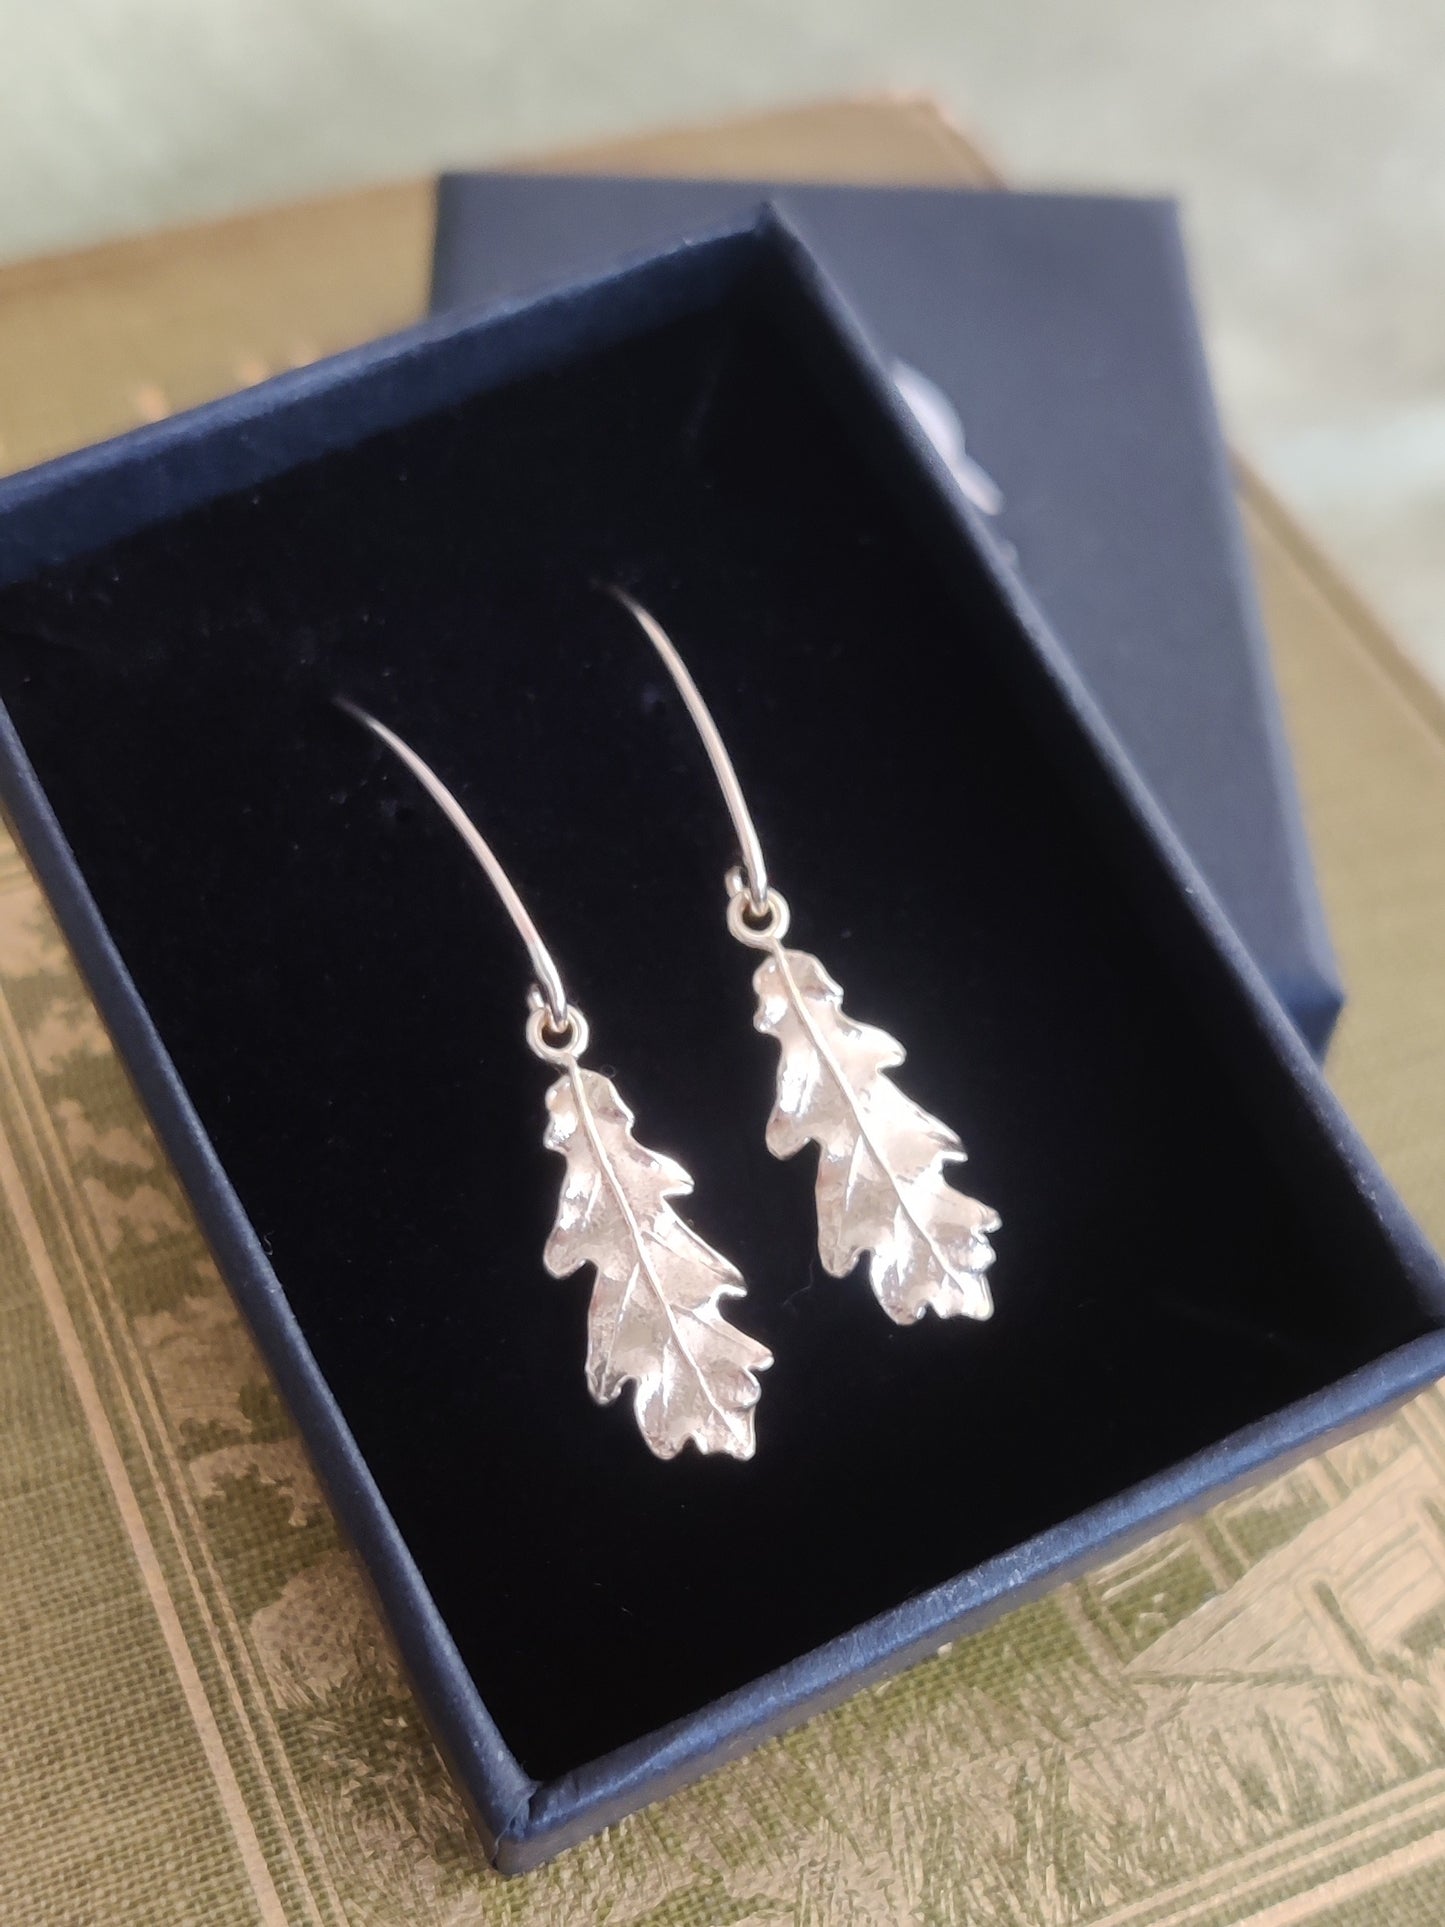 Silver leaf earrings by Notion Jewellery